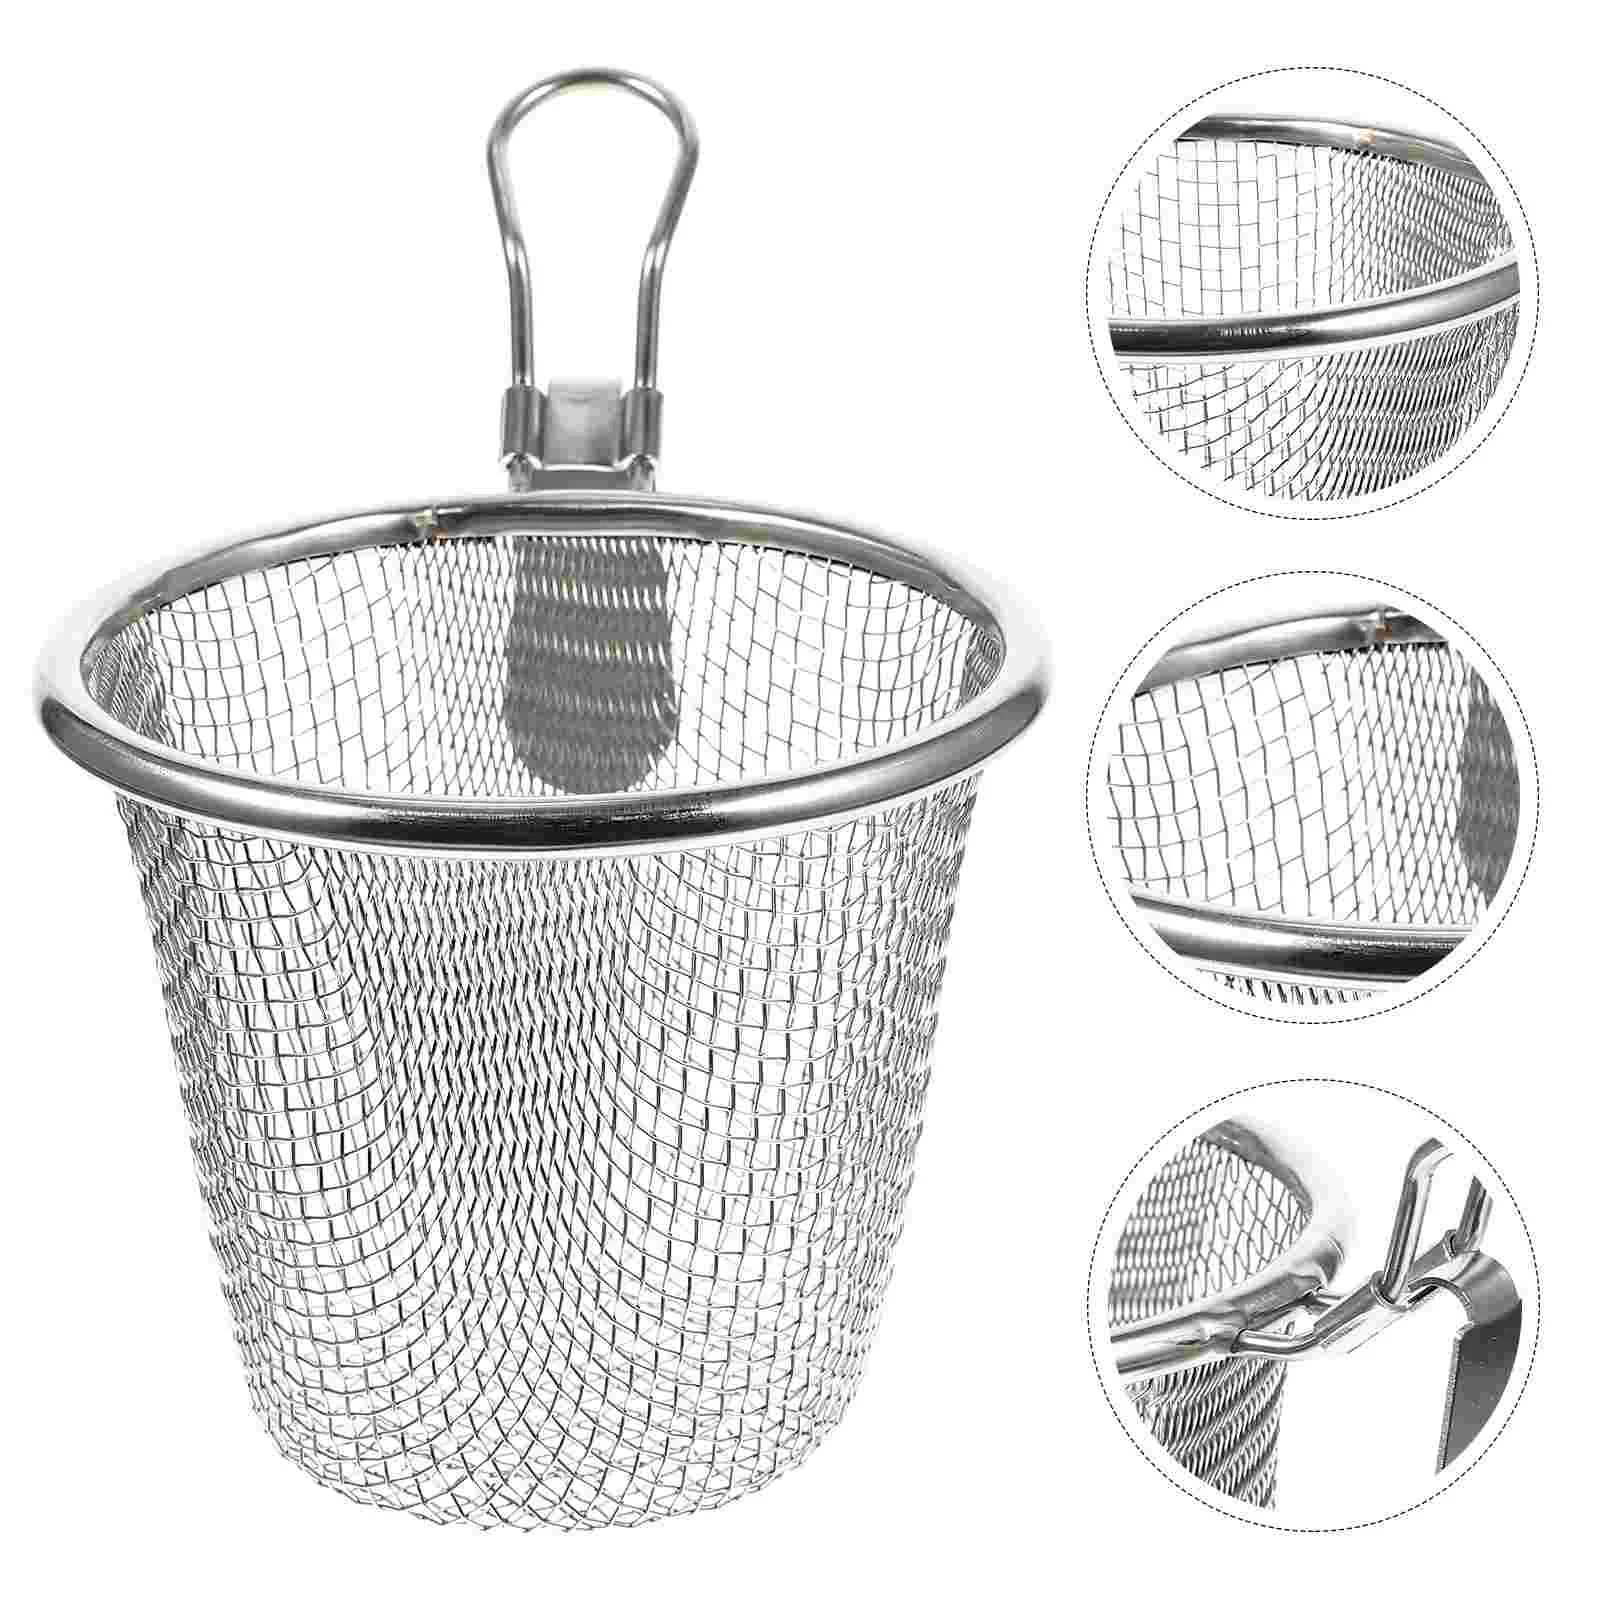 

Light Mesh Filter Basket Noodle Strainer Pasta Strainer Pasta Basket for Restaurant Kitchen Decorate